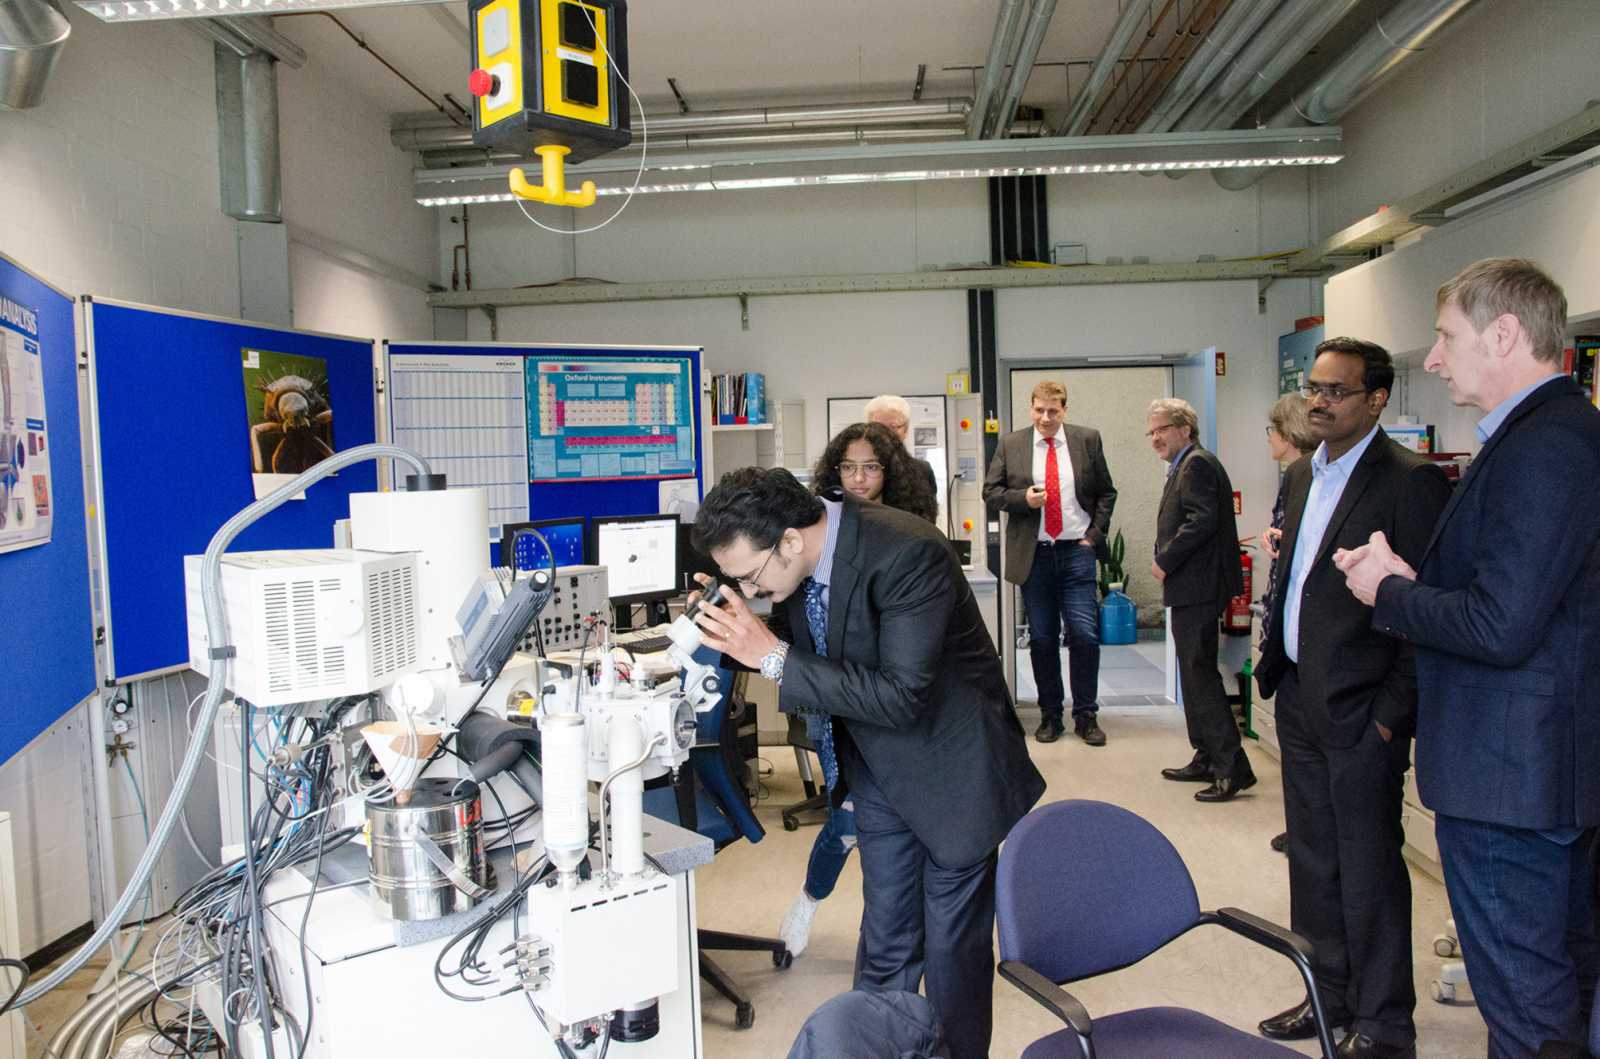 Auch Besichtigungen der Räumlichkeiten auf dem Campus standen an – wie hier im Labor für Elektronenmikroskopie. (Foto: FH Münster/Pressestelle)